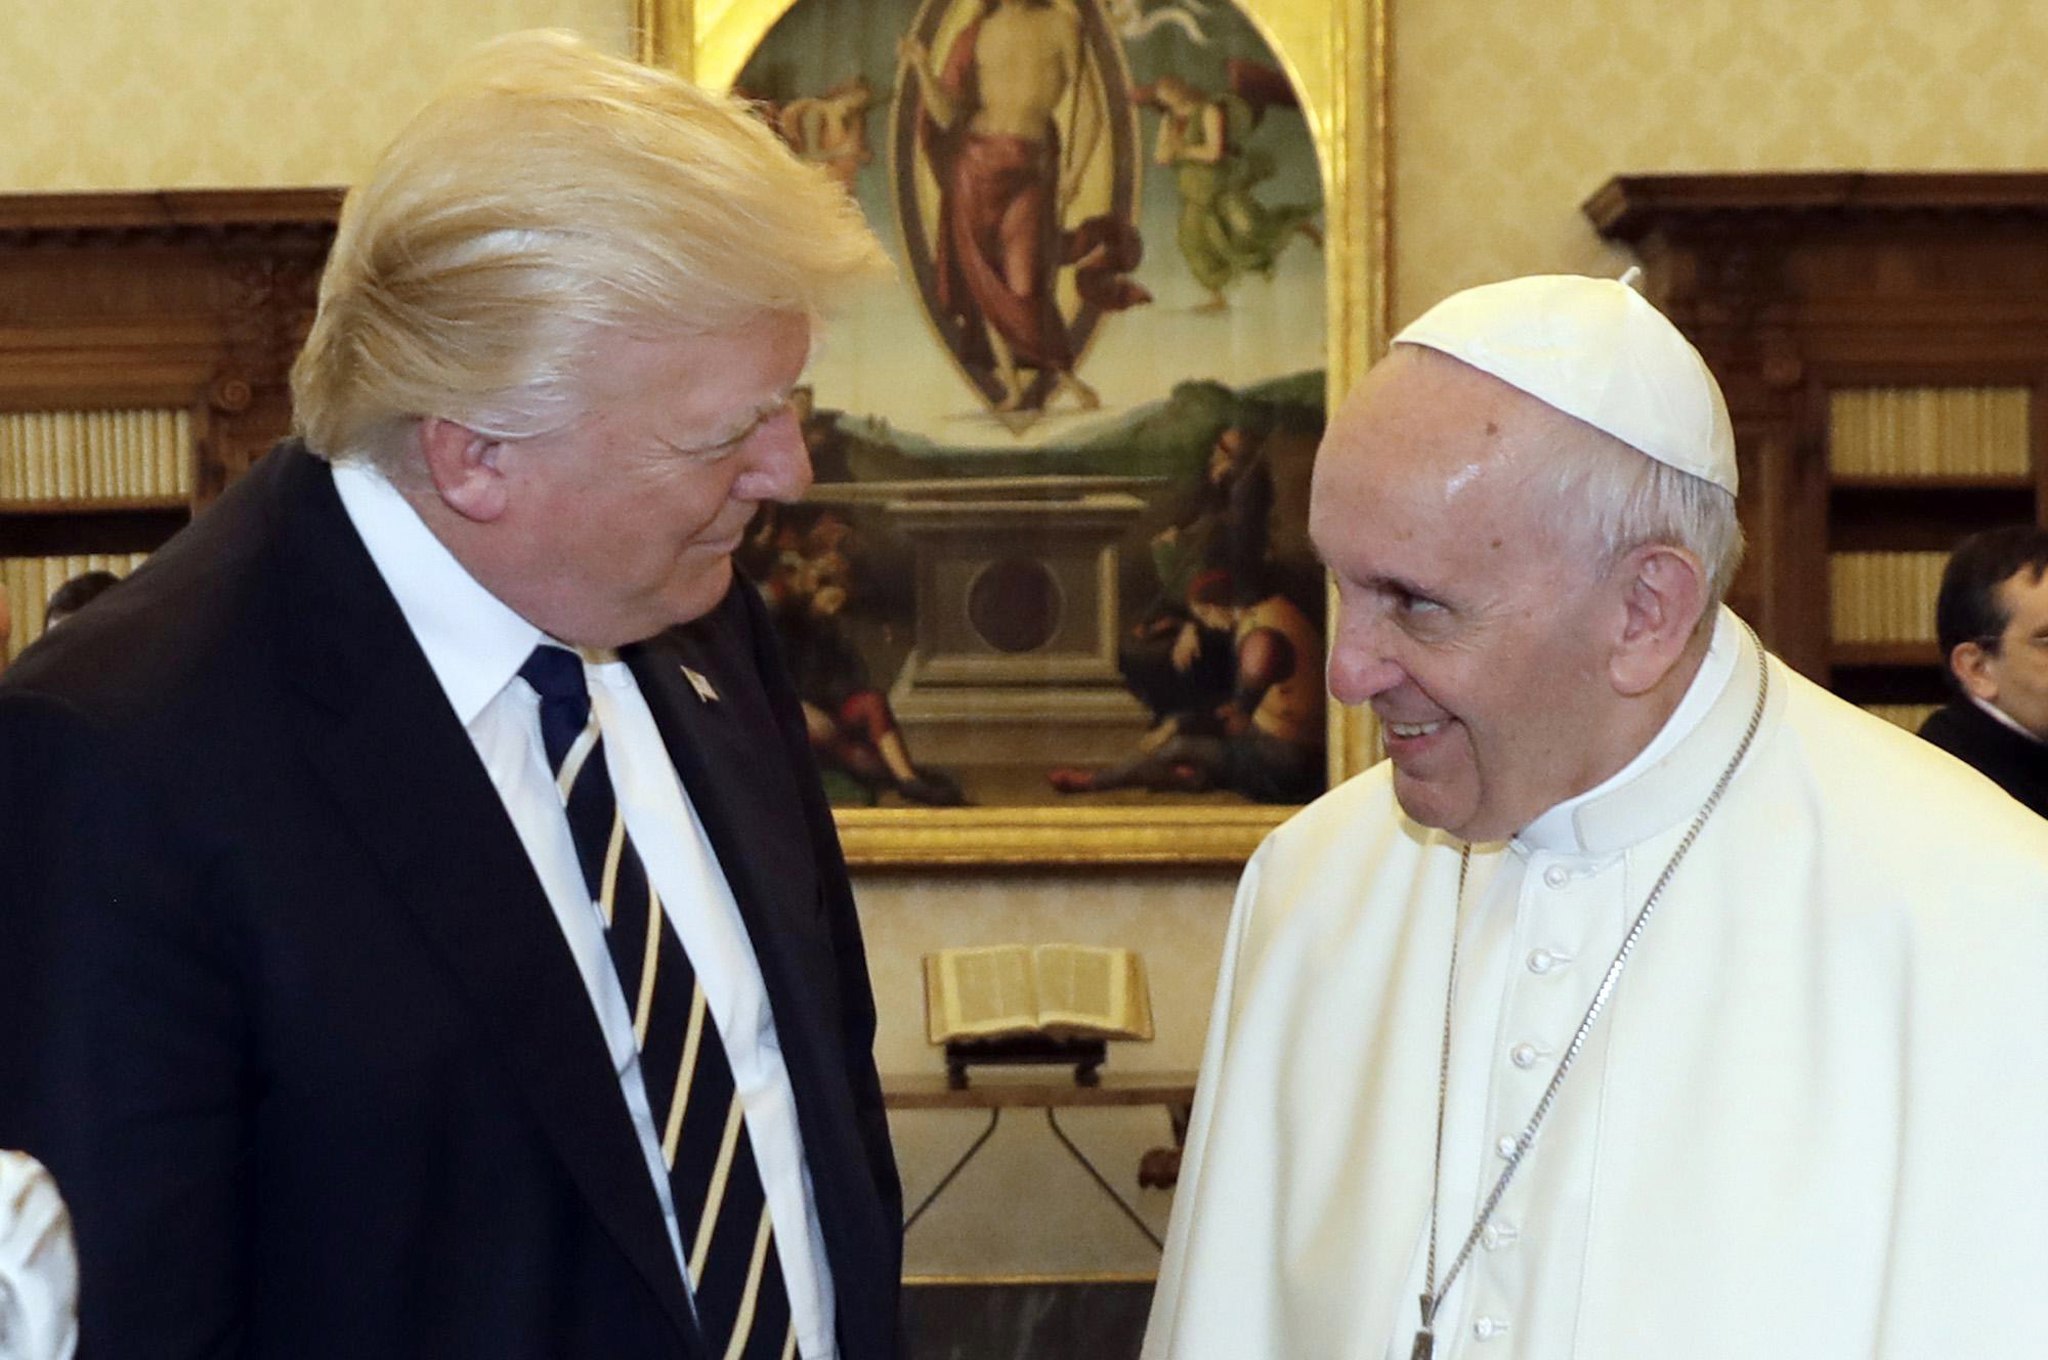 Paus Franciscus ontmoet de Amerikaanse president Trump, op zijn eerste reis buiten de VS als president. Foto: EPA